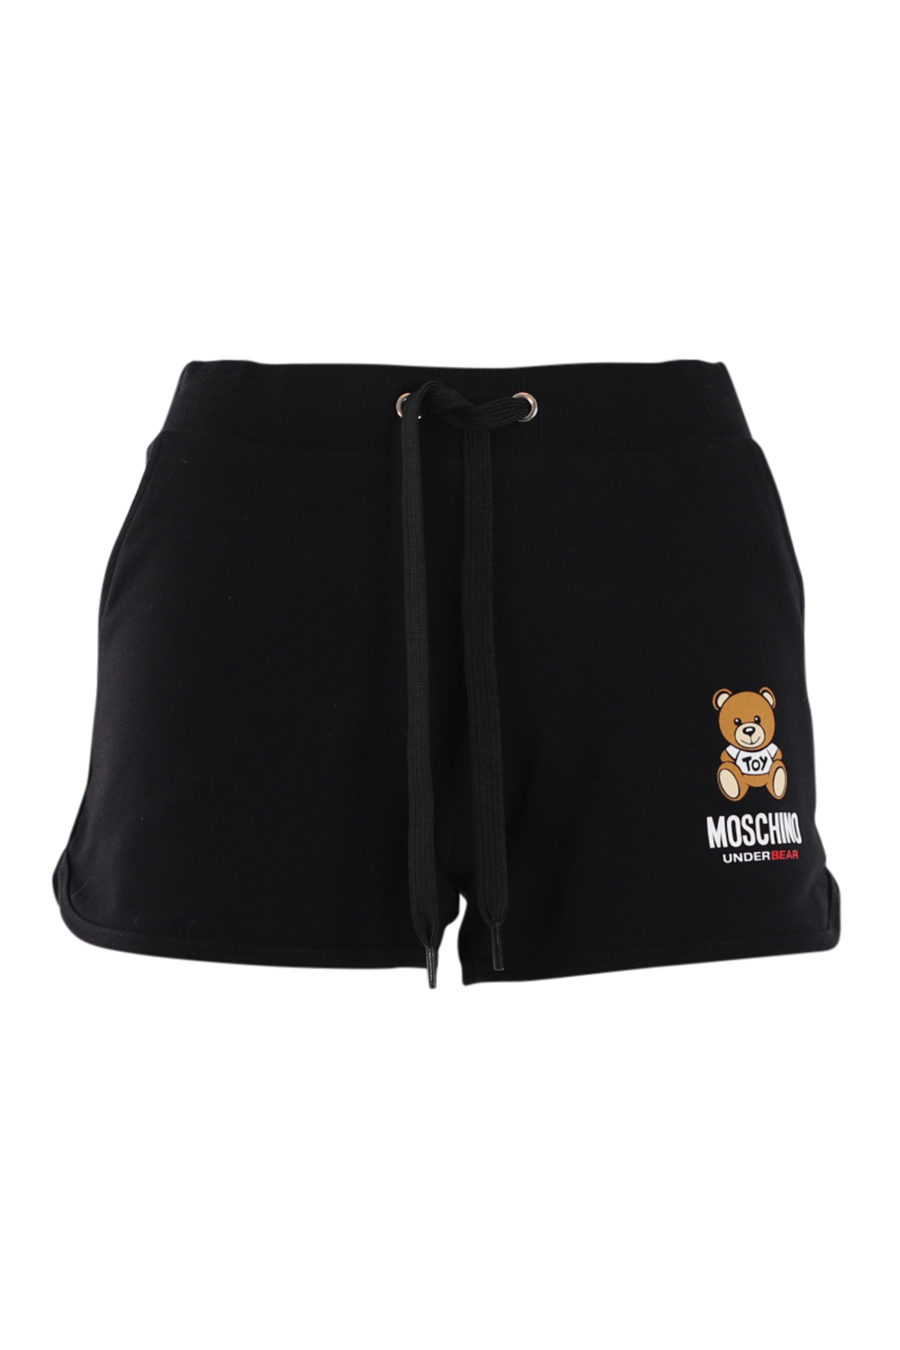 Pantalón corto negro con logo oso "underbear" - IMG 0552